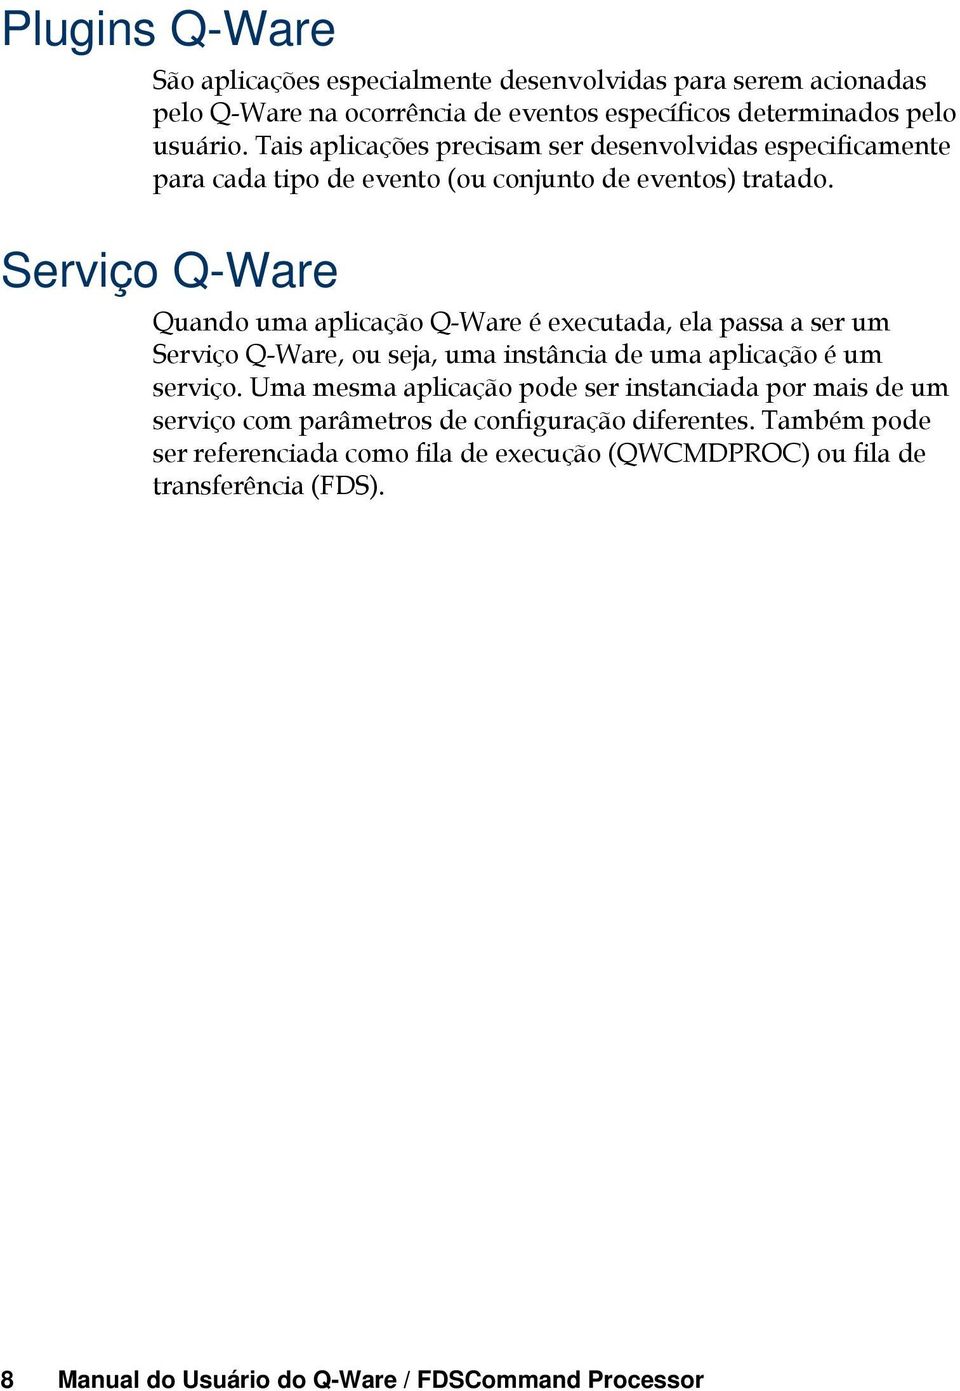 Serviço Q-Ware Quando uma aplicação Q-Ware é executada, ela passa a ser um Serviço Q-Ware, ou seja, uma instância de uma aplicação é um serviço.